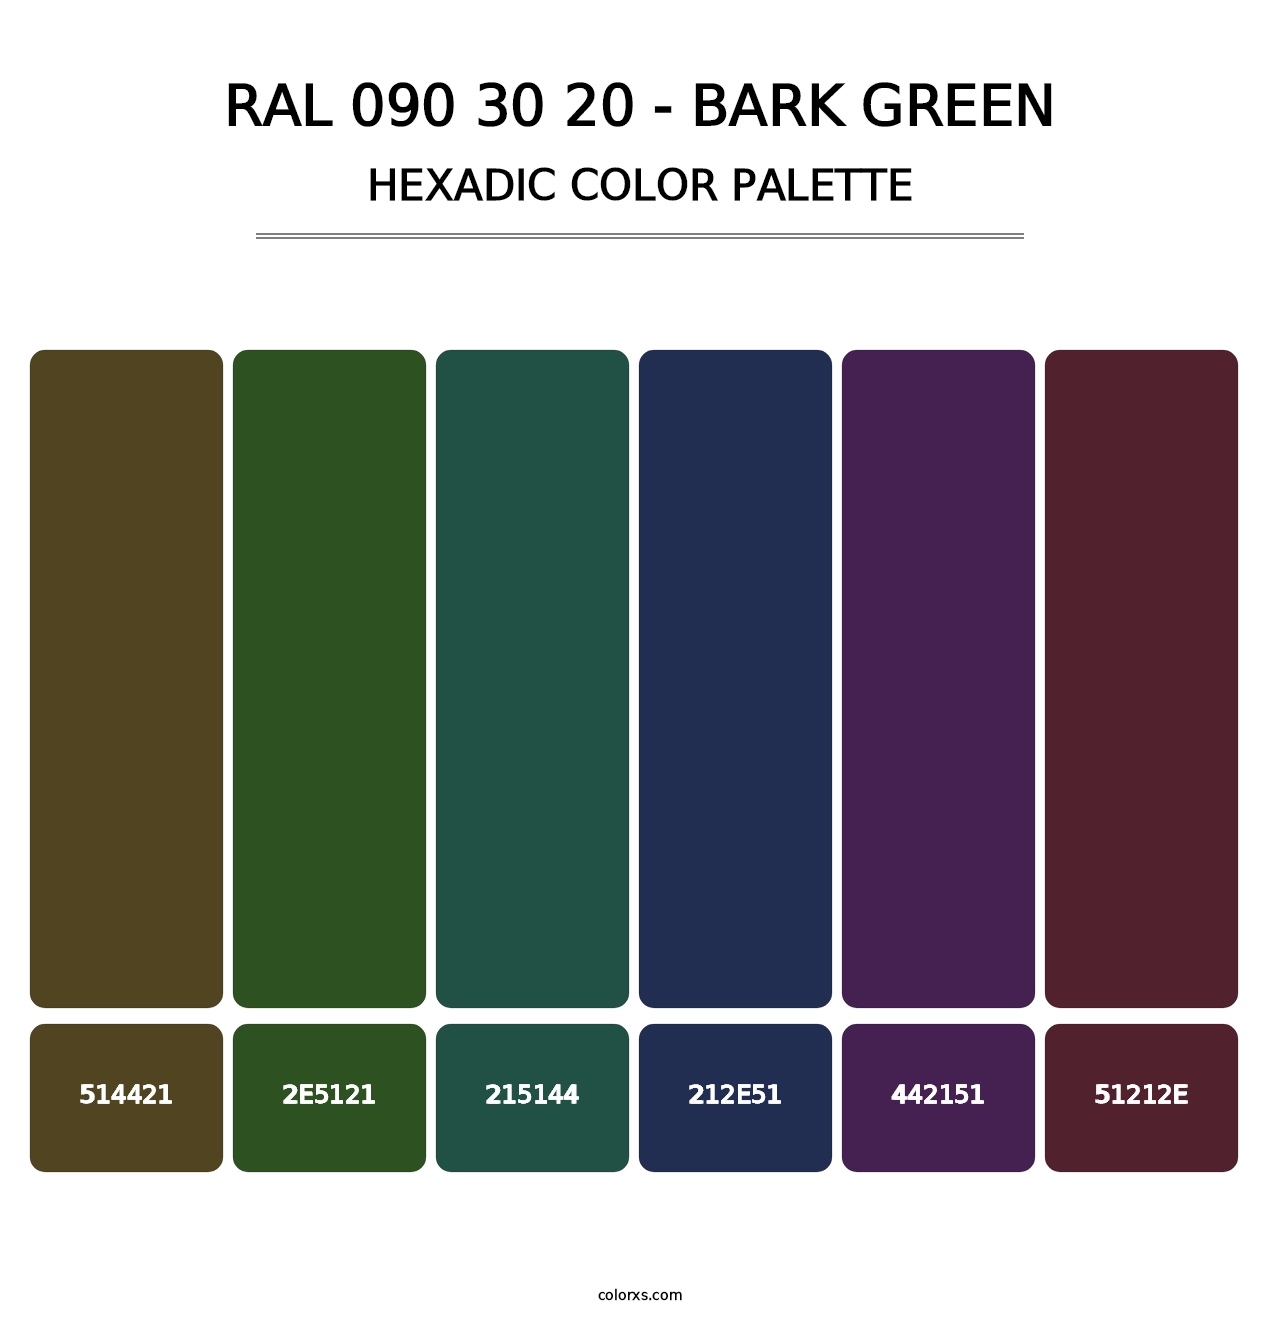 RAL 090 30 20 - Bark Green - Hexadic Color Palette